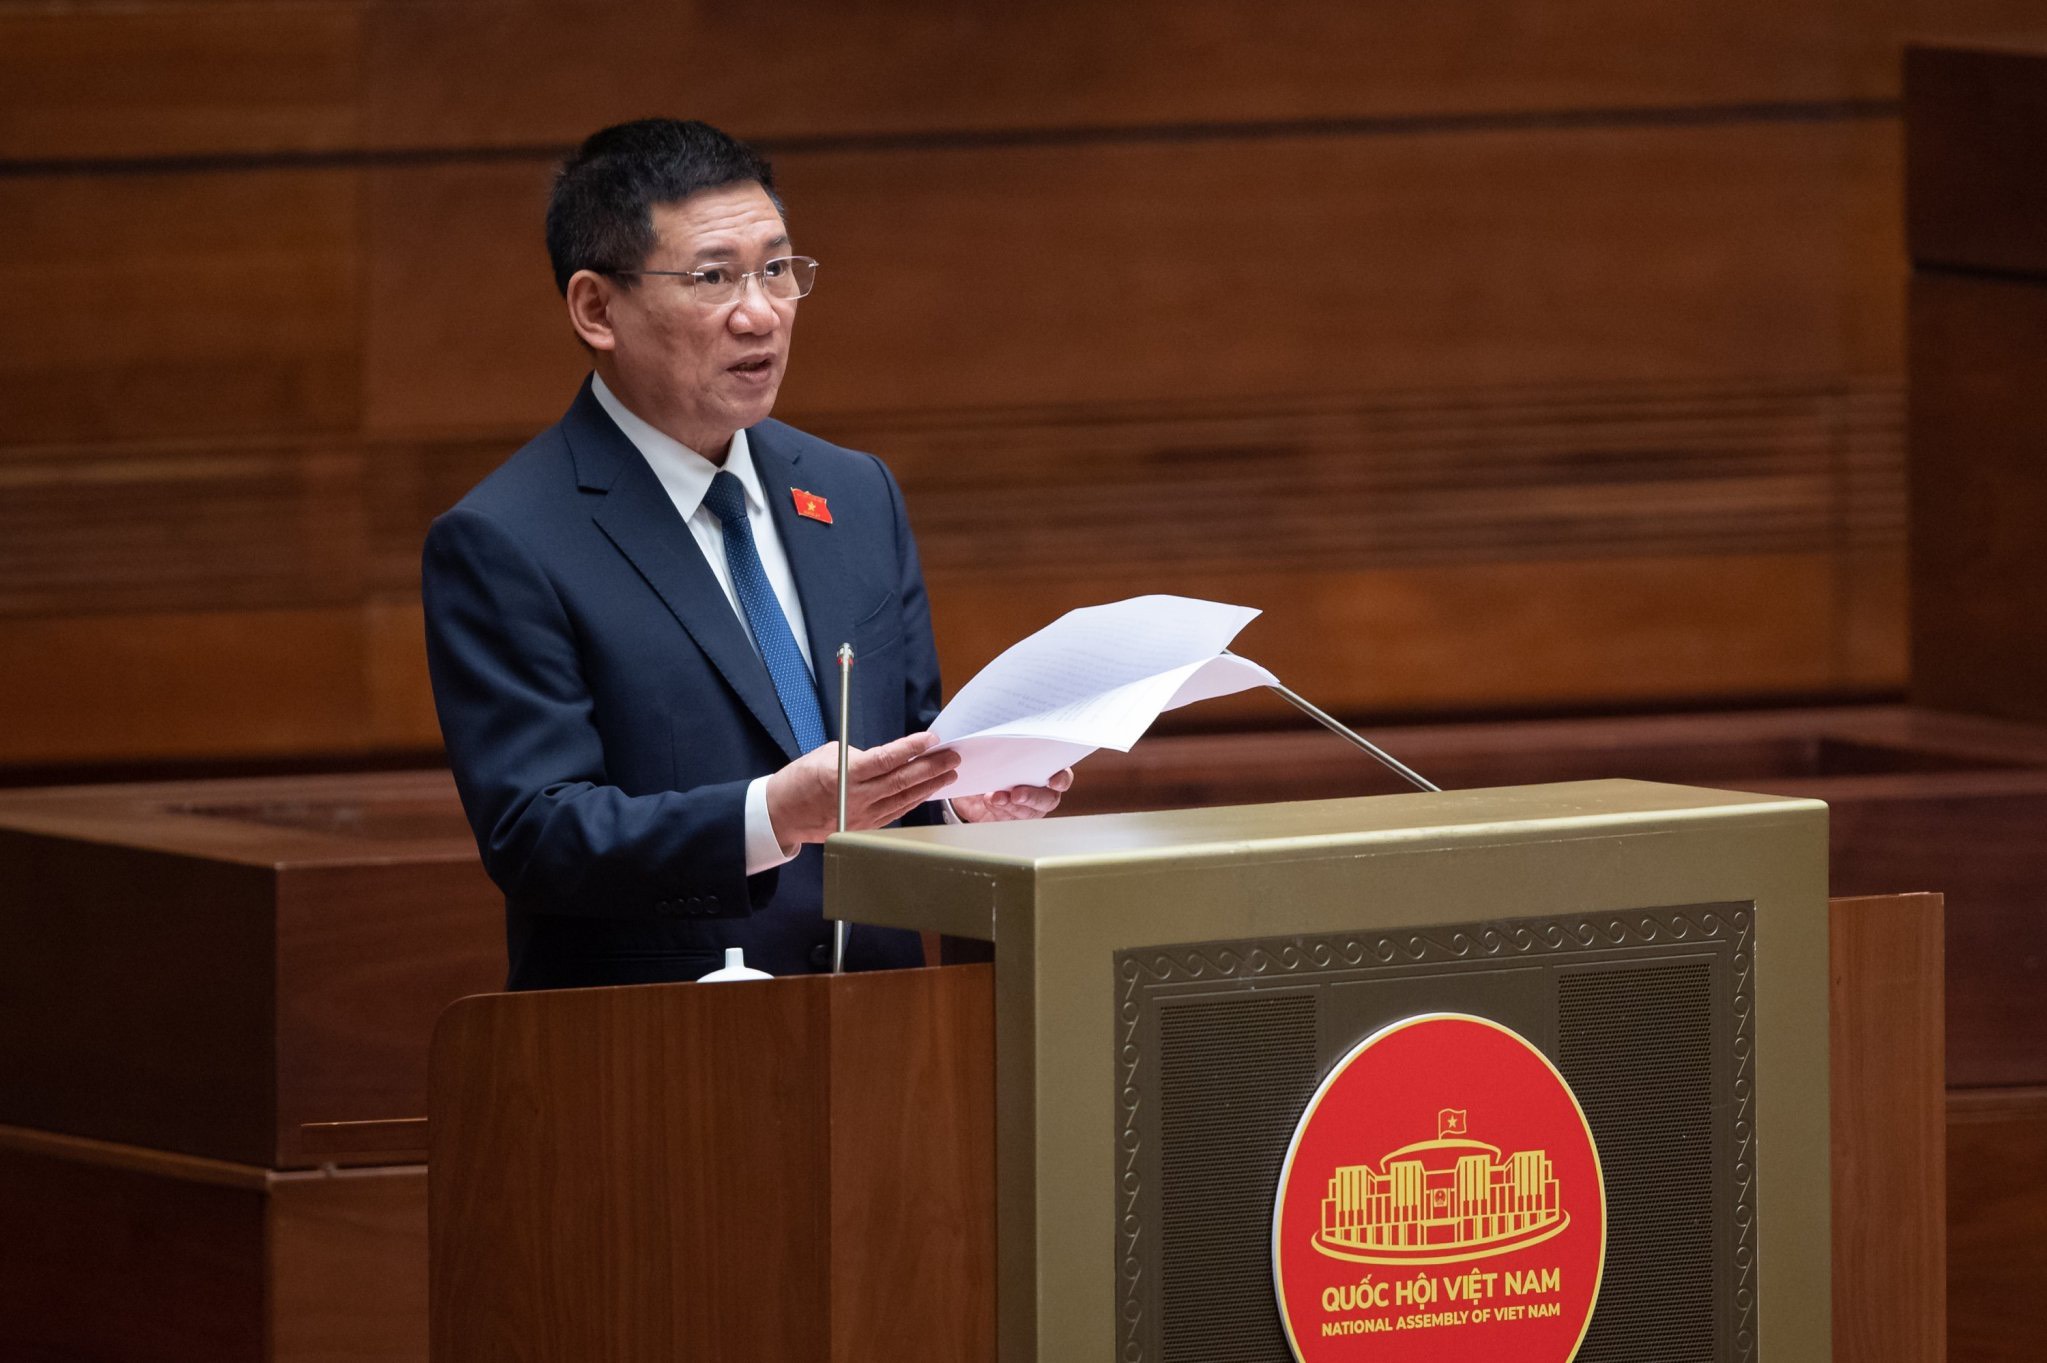 Bộ trưởng Bộ Tài chính Hồ Đức Phớc, thừa ủy quyền của Thủ tướng Chính phủ trình bày Báo cáo quyết toán ngân sách nhà nước năm 2021